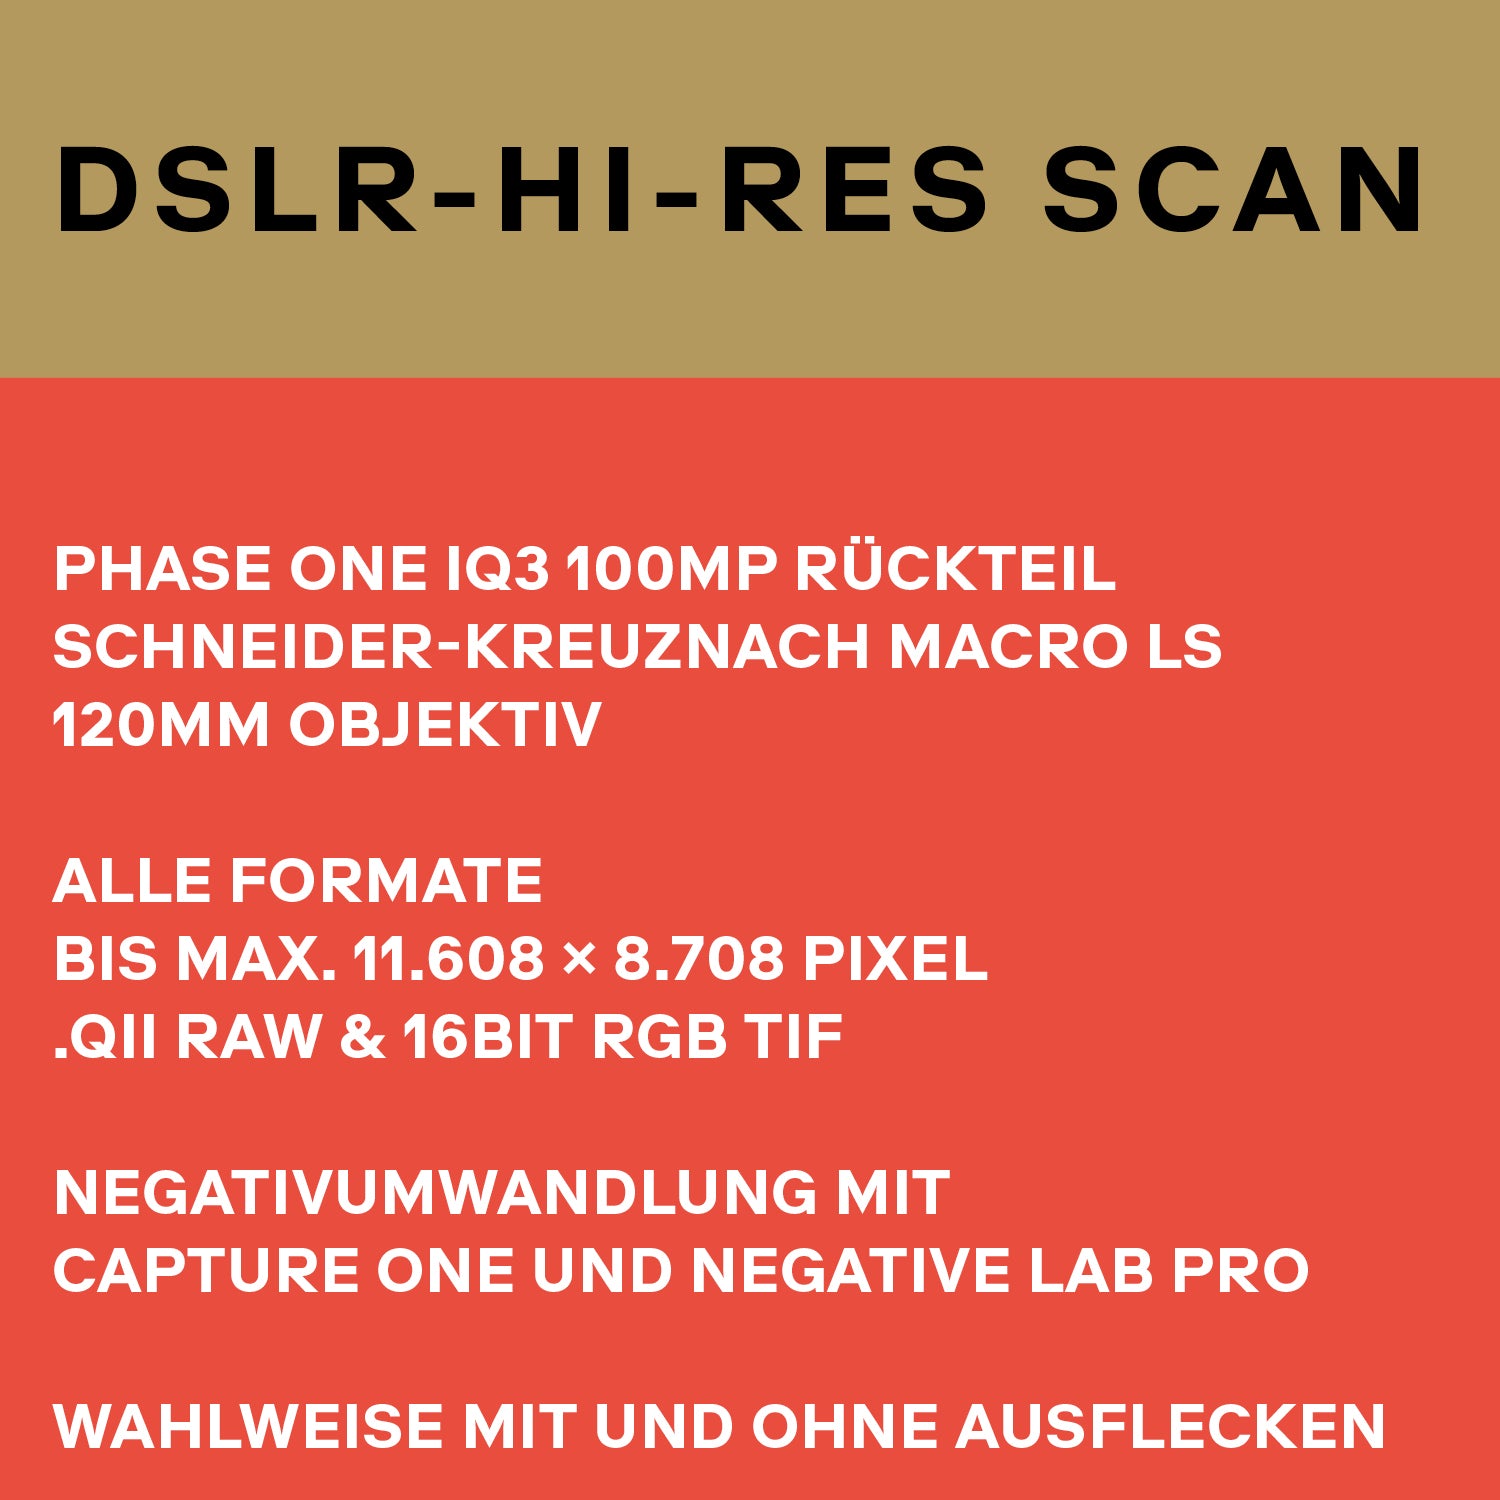 DSLR-HiRes-Scan